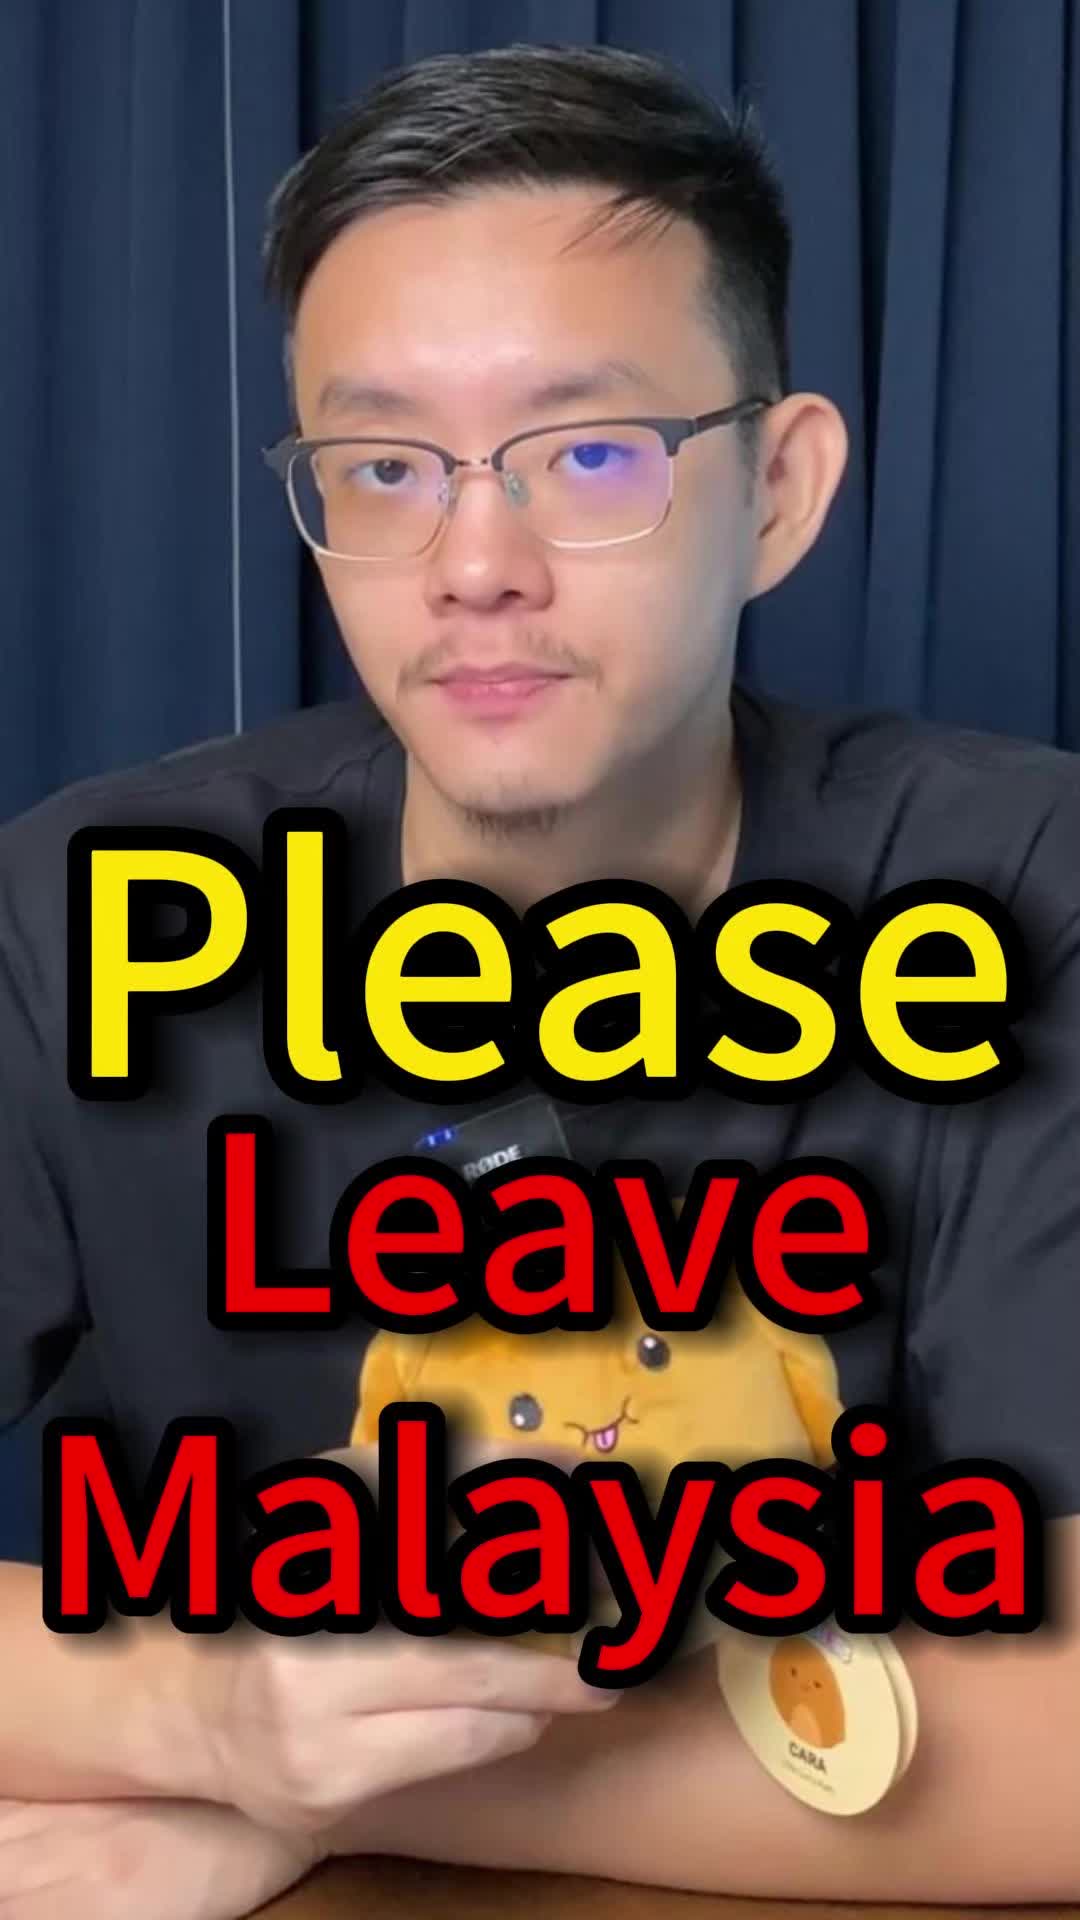 你应该离开马来西亚去找更好的工作吗？